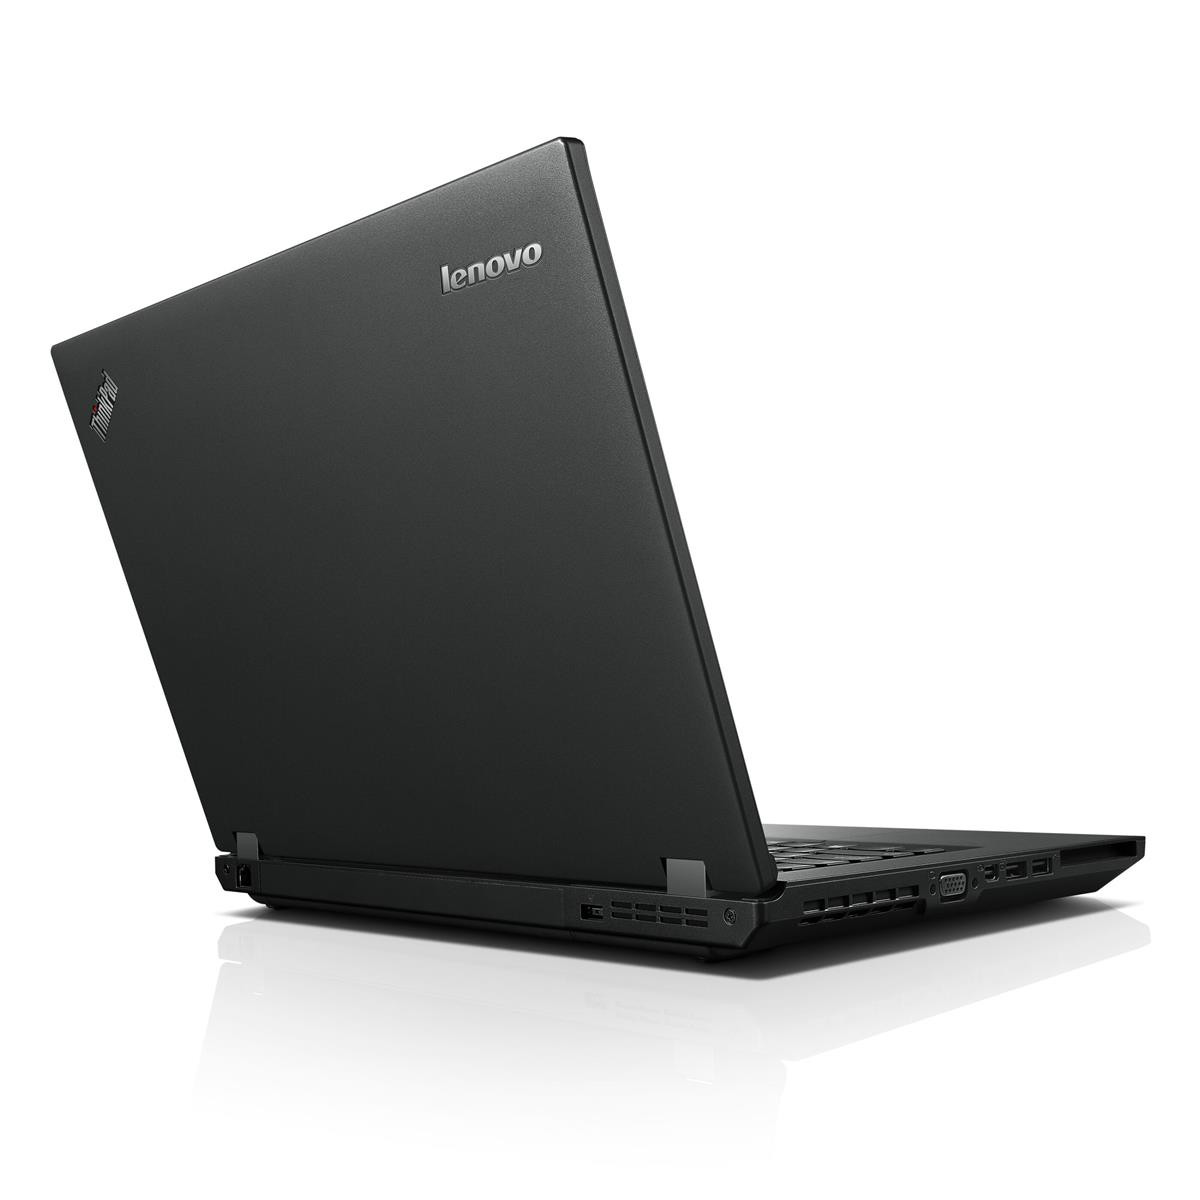 LENOVO ThinkPad L440 Intel Core i5-4300M 4GB RAM 500GB HDD HD WWAN Win 10 Pro (DVD Blende fehlt)